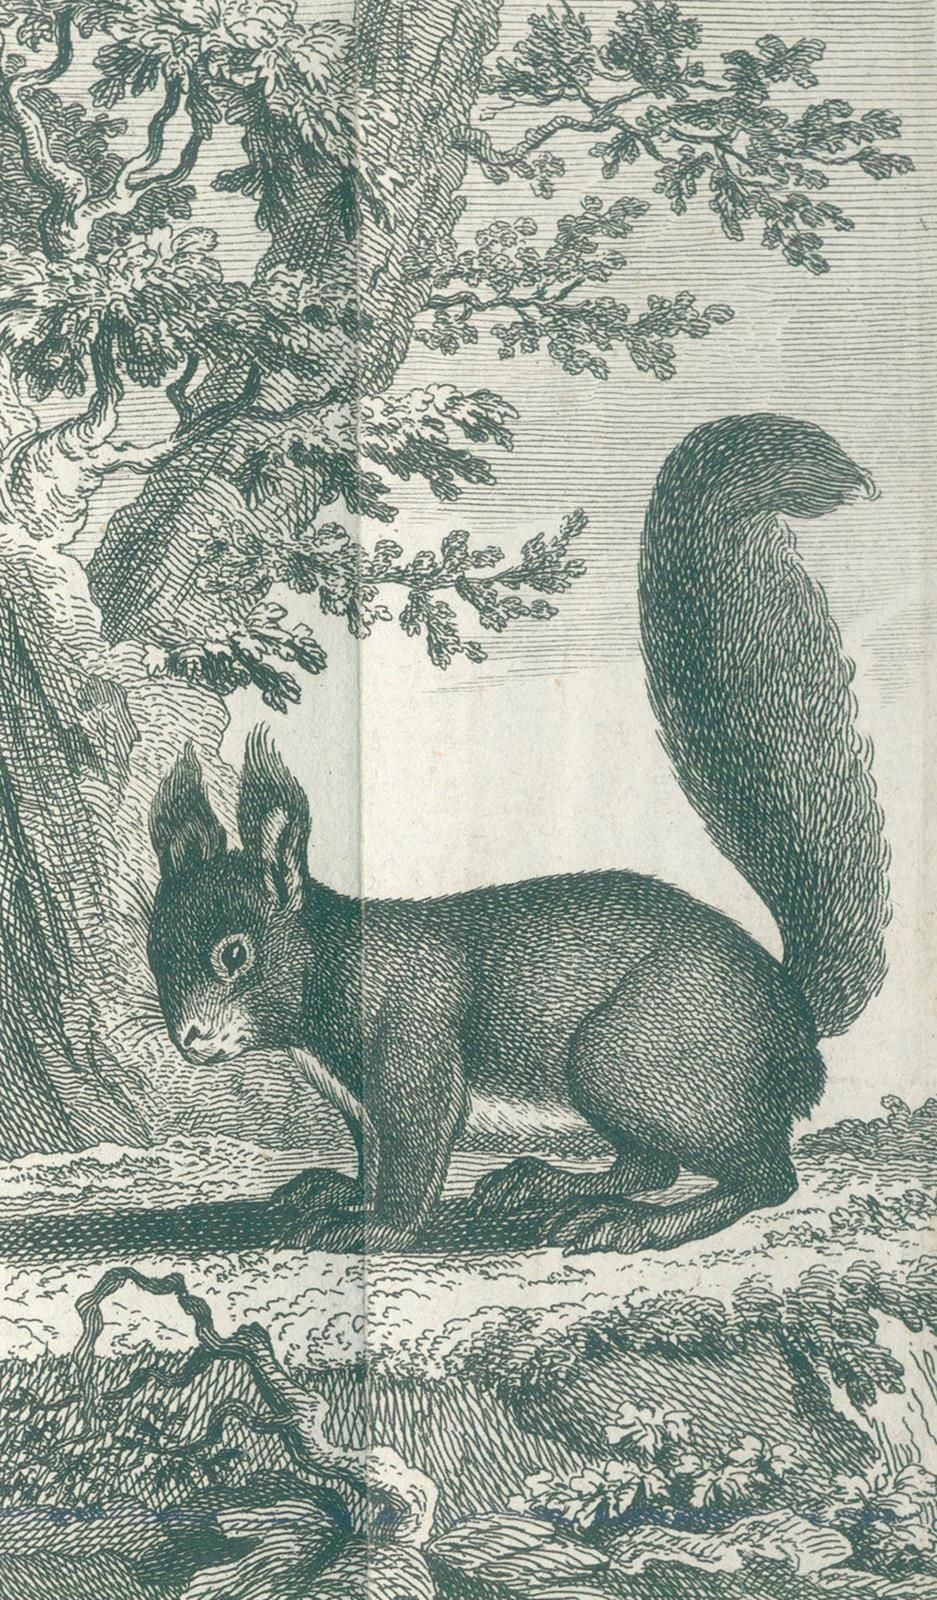 Buffon,(G.L.L.)de. Histoire naturelle des animaux quadrupèdes. 10 volumes de la &hellip;